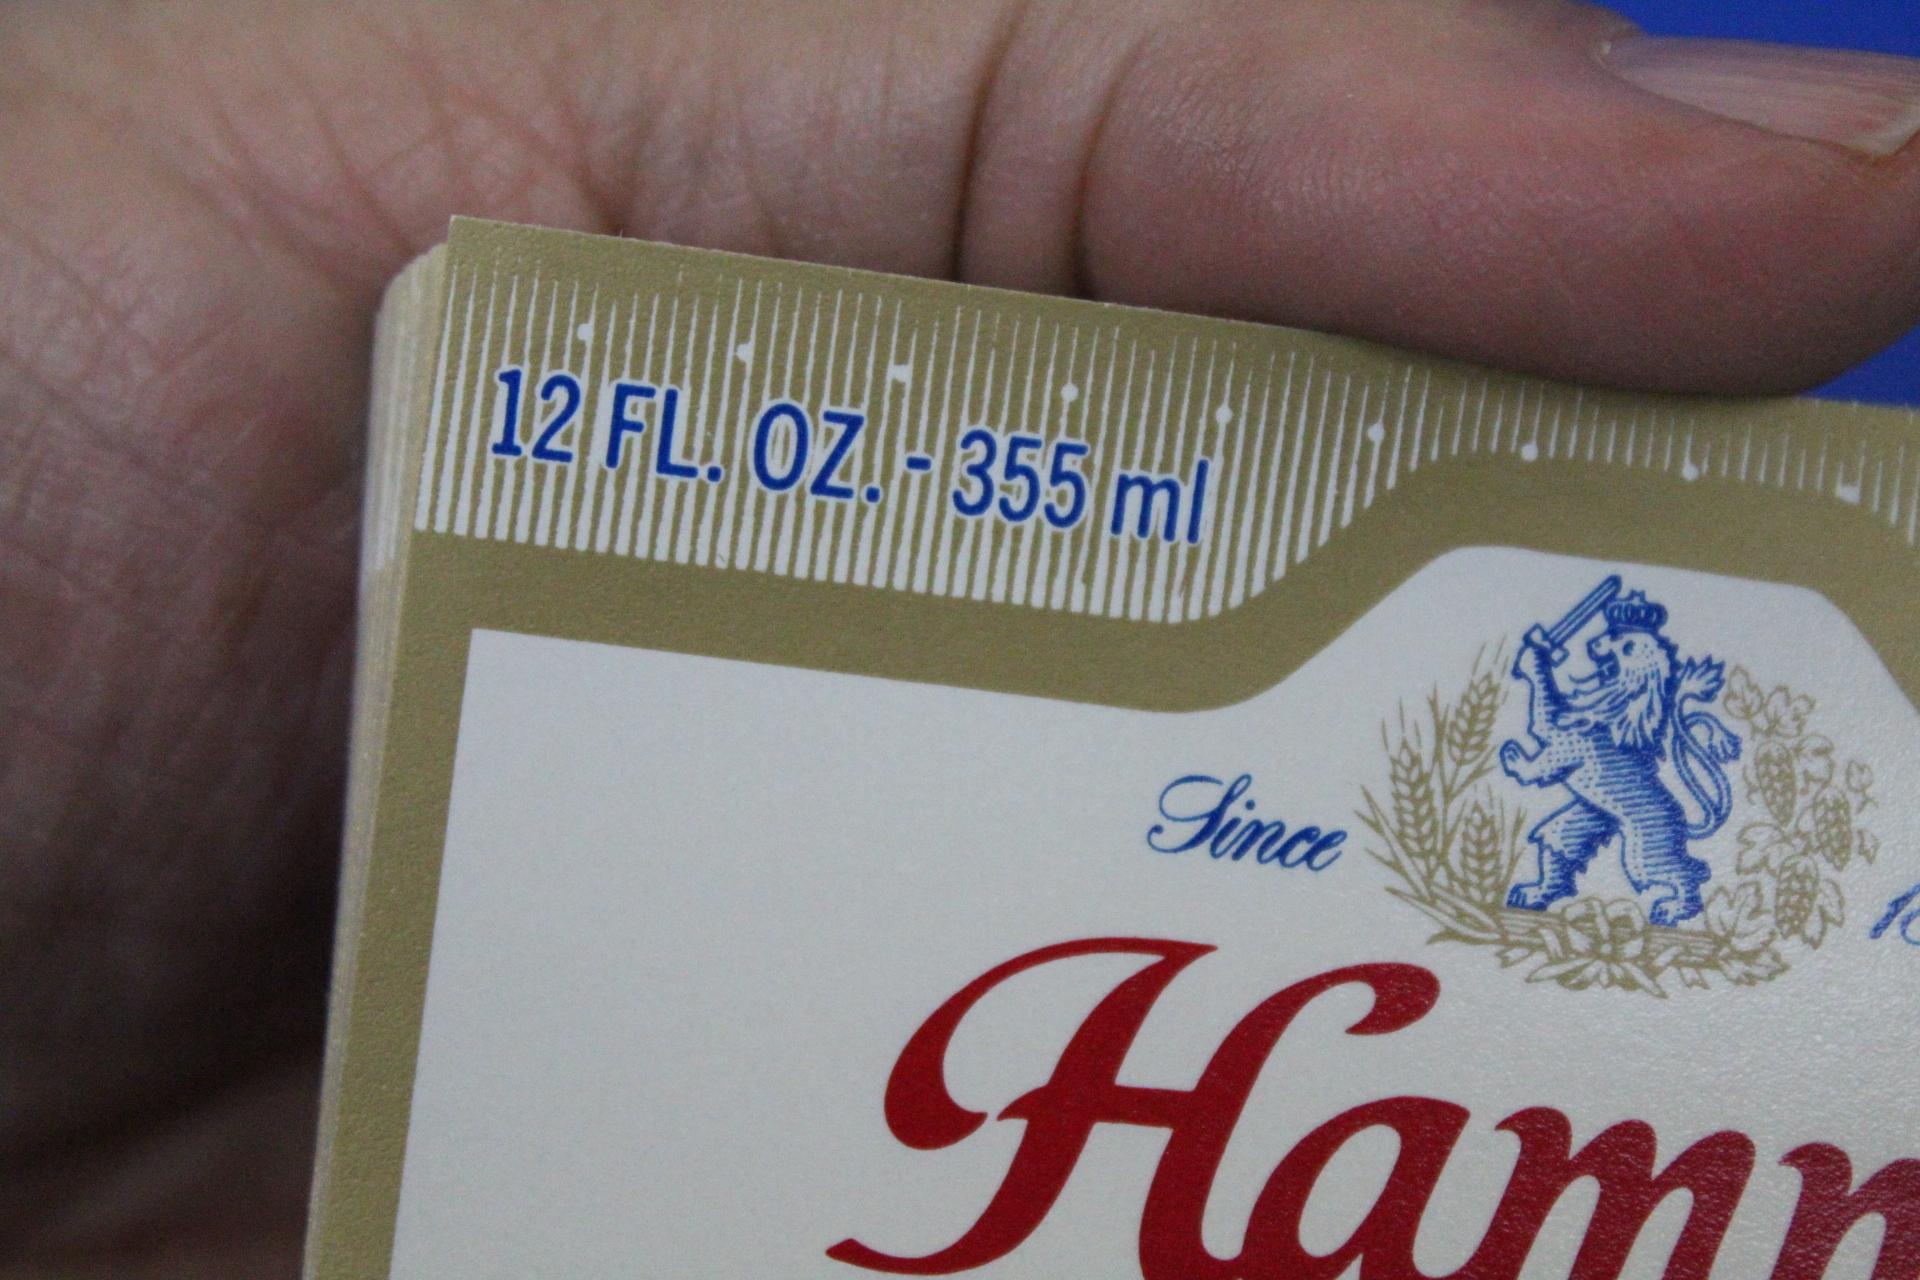 Vintage NOS Beer Bottle Lables: 50 Hamm”s 12 oz